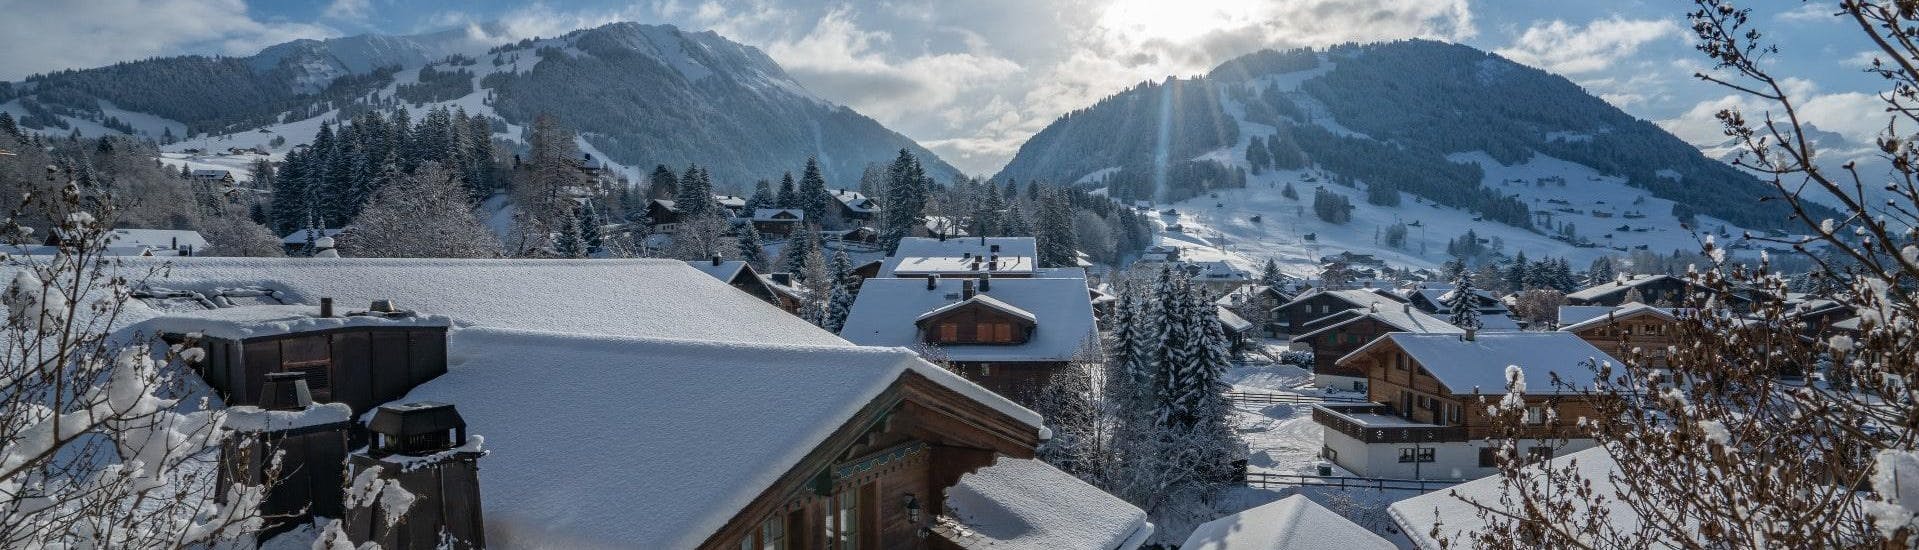 Ein Blick auf das verschneite Gstaad in den Schweizer Alpen, ein beliebter Ort, an dem Skifahrer bei einer der örtlichen Skischulen einen Skikurs buchen können.